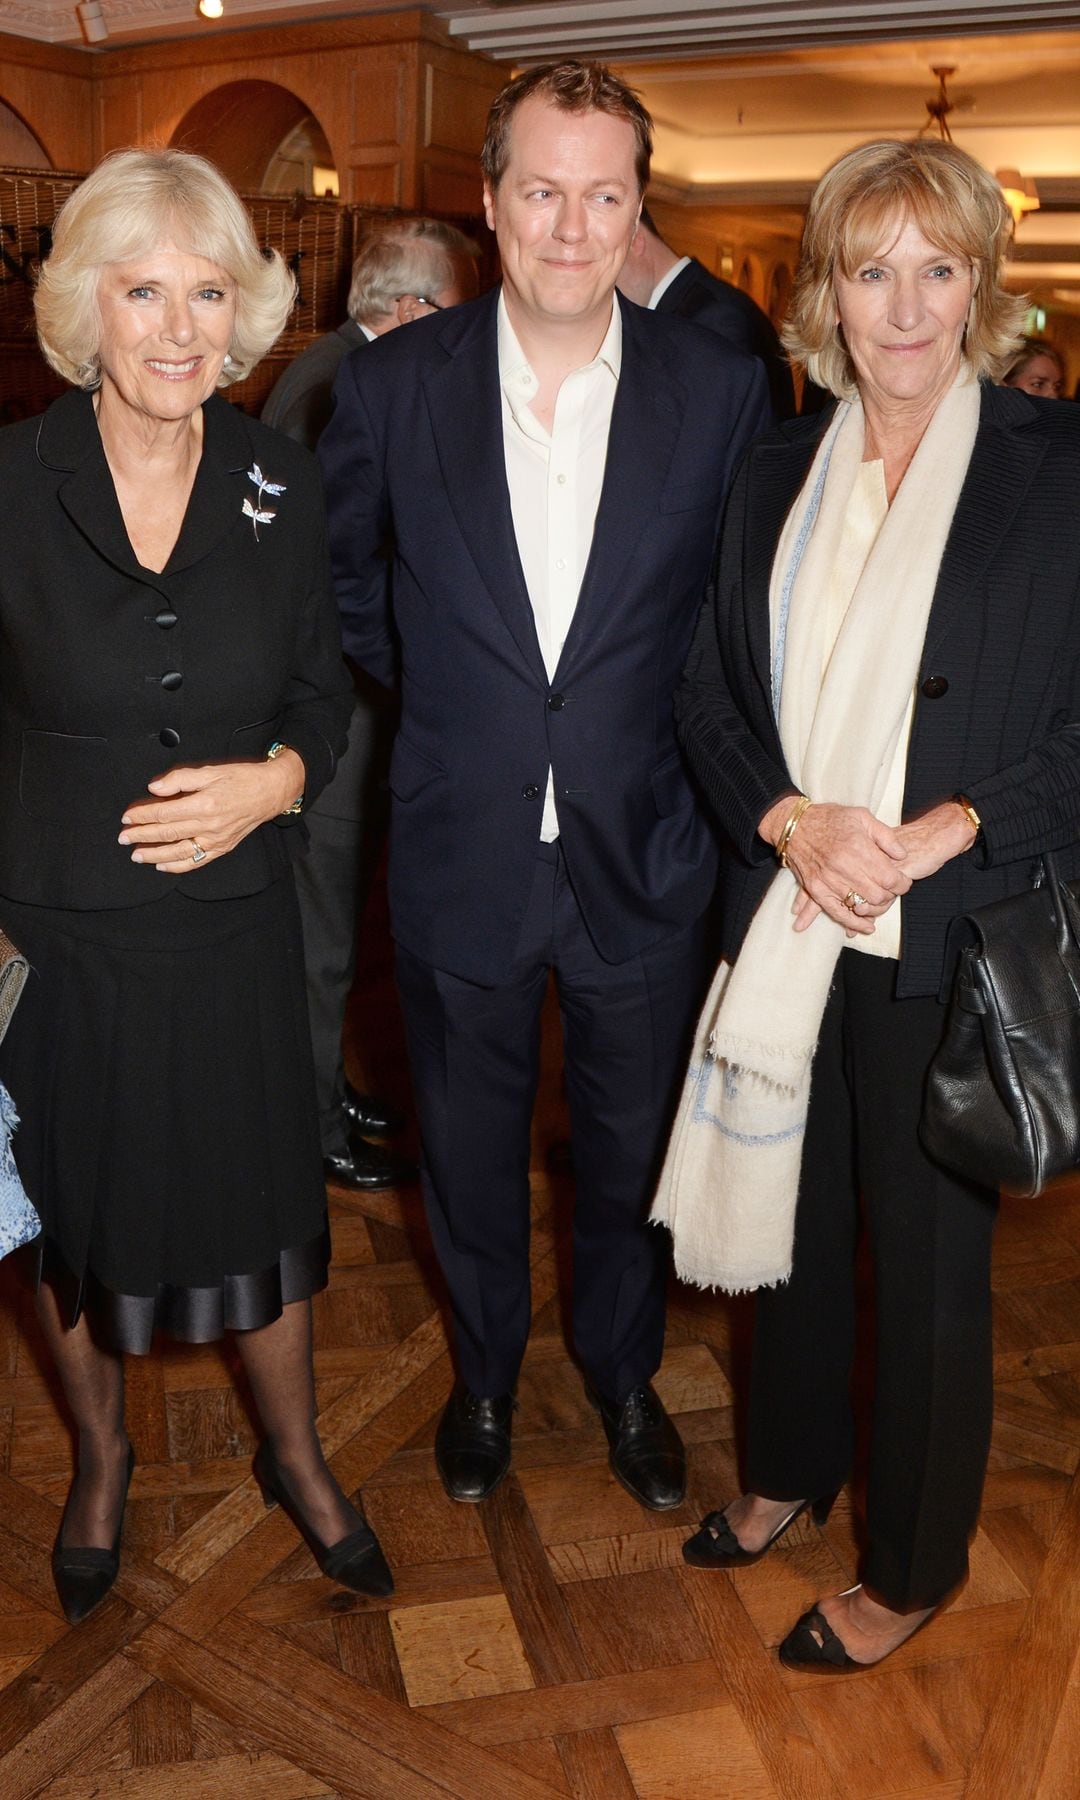 Camilla, entonces duquesa de Cornualles, con su hijo, Tom Parker Bowles, y su hermana, Annabel Elliot, durante el lanzamiento de uno de los libros sobre gastronomía de hijo de Camilla. Fue en octubre de 2014 en Fortnum & Mason